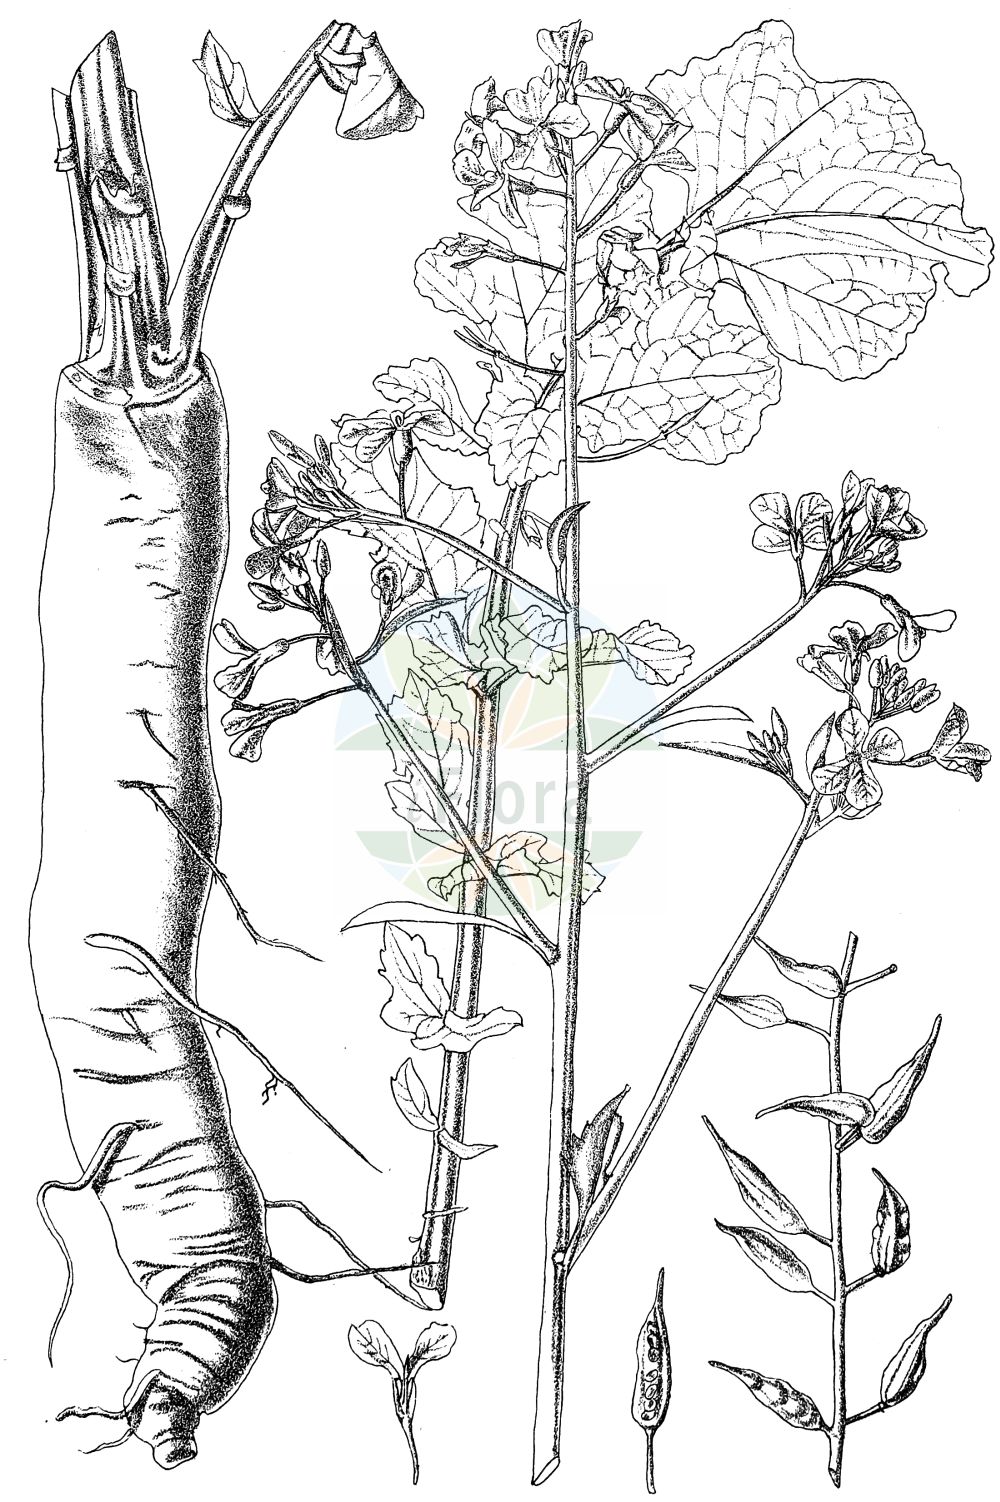 Historische Abbildung von Raphanus sativus (Garten-Rettich - Garden Radish). Das Bild zeigt Blatt, Bluete, Frucht und Same. ---- Historical Drawing of Raphanus sativus (Garten-Rettich - Garden Radish). The image is showing leaf, flower, fruit and seed.(Raphanus sativus,Garten-Rettich,Garden Radish,Raphanistrum gayanum,Raphanus niger,Raphanus rotundus,Raphanus sativus,Raphanus sativus subsp. niger,Garten-Rettich,Gartenrettich,Ölrettich,Radieschen,Garden Radish,Cultivated Radish,Radish,Small Radish,Raphanus,Hederich,Radish,Brassicaceae,Kreuzblütler,Cabbage family,Blatt,Bluete,Frucht,Same,leaf,flower,fruit,seed,Kirtikar & Basu (1918))